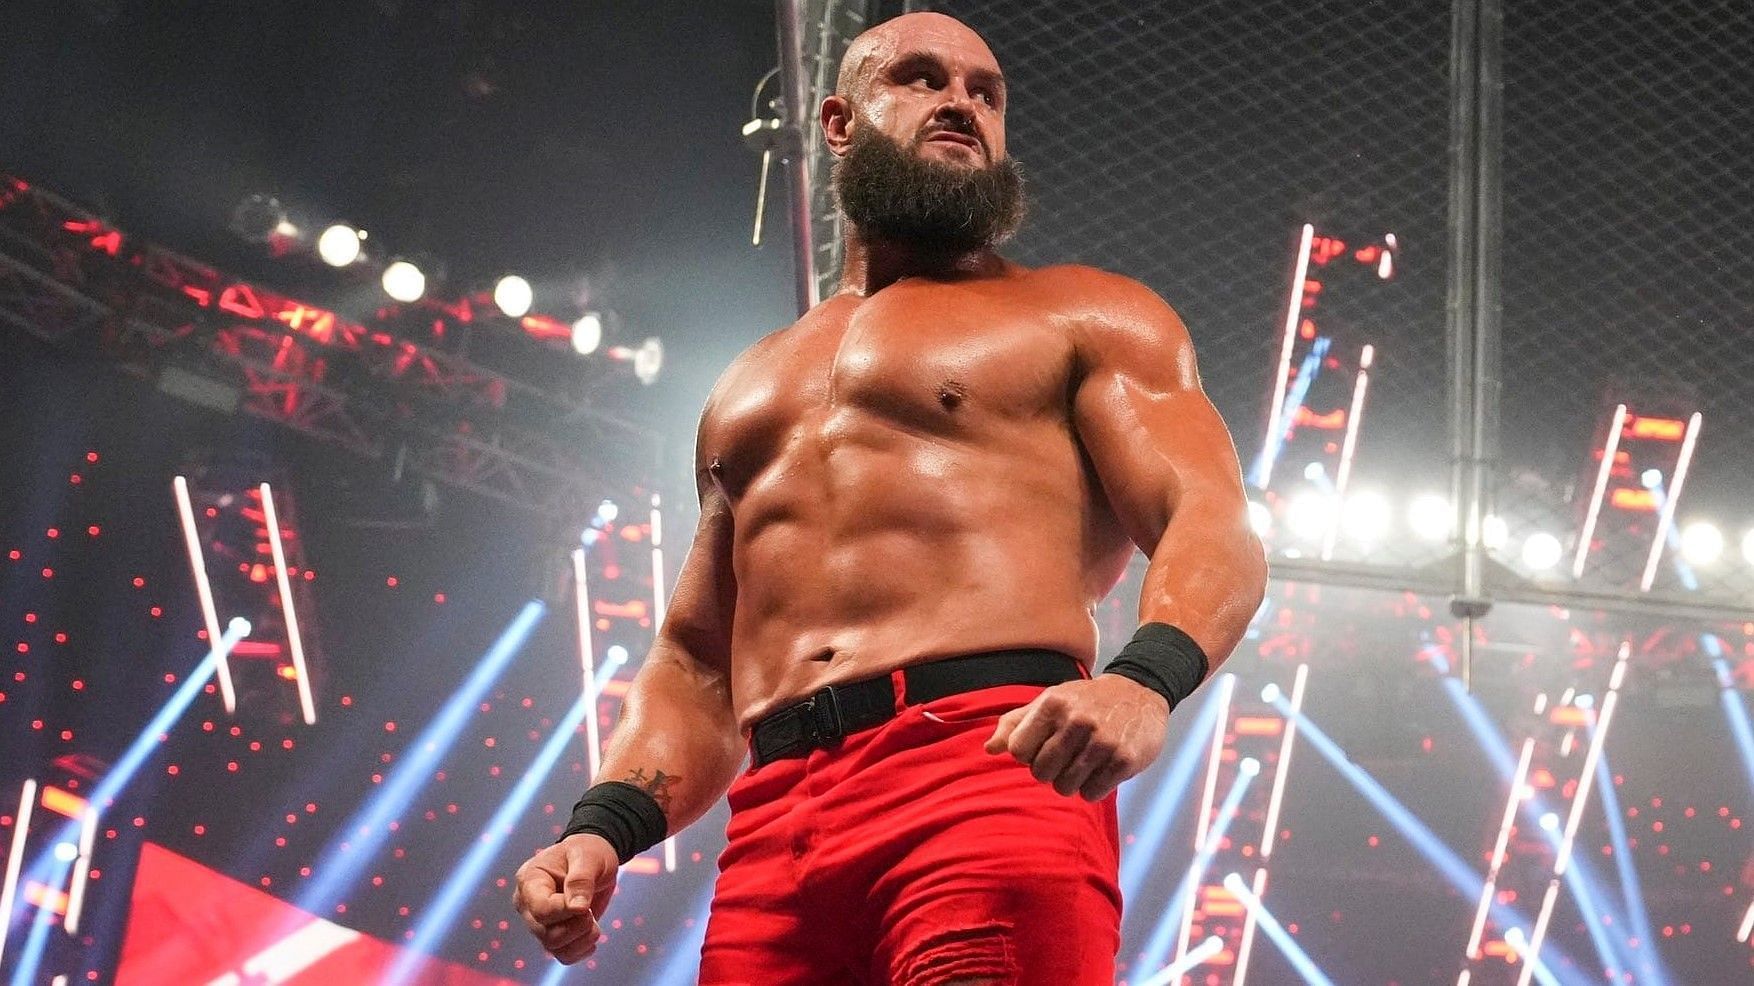 Braun Strowman is a major superstar in WWE